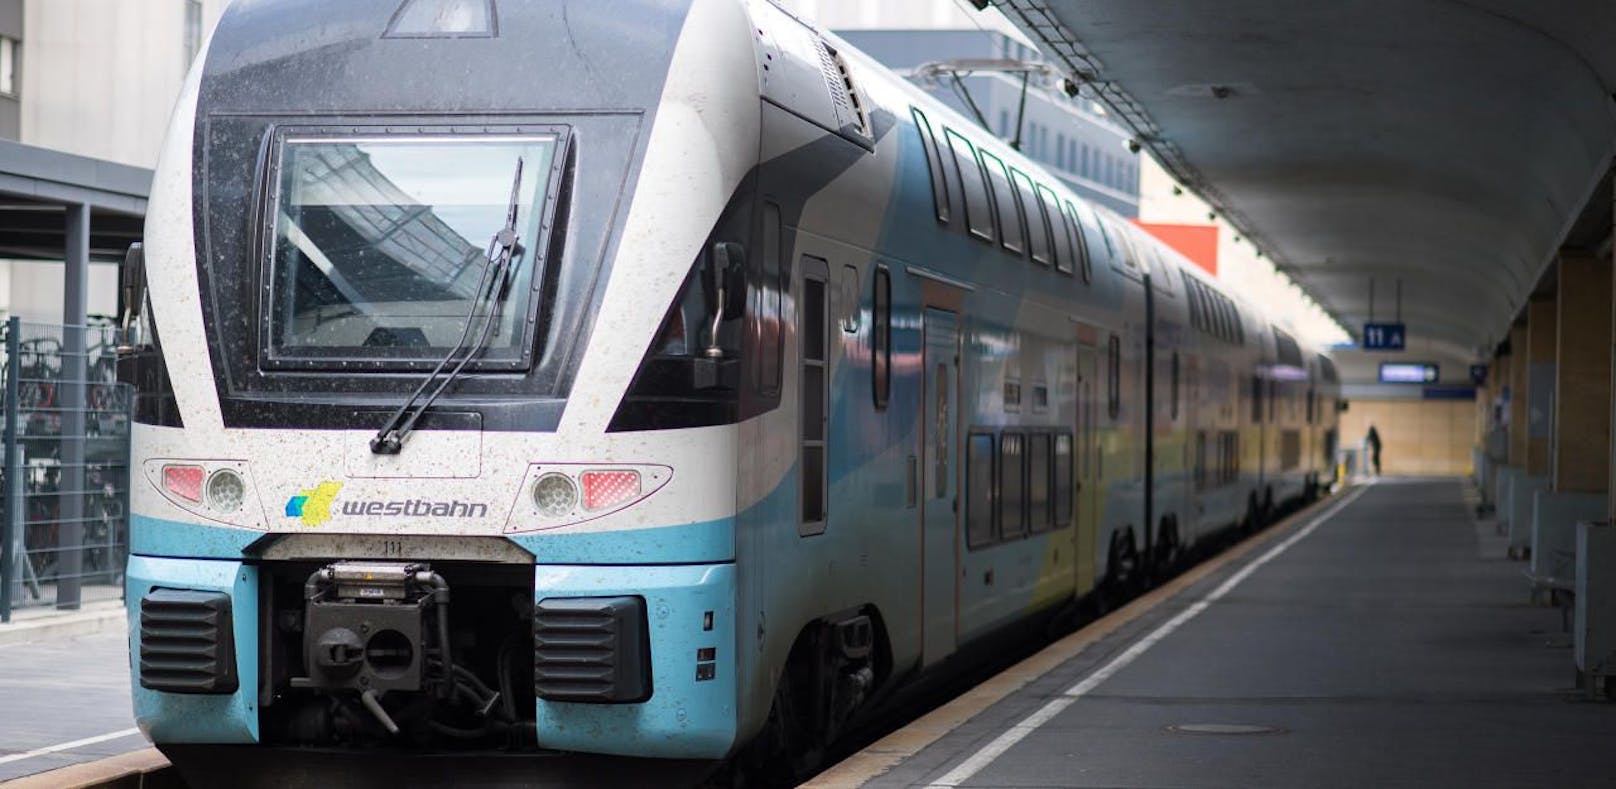 Westbahn-Betreiber kritisiert fehlende Ausschreibung.